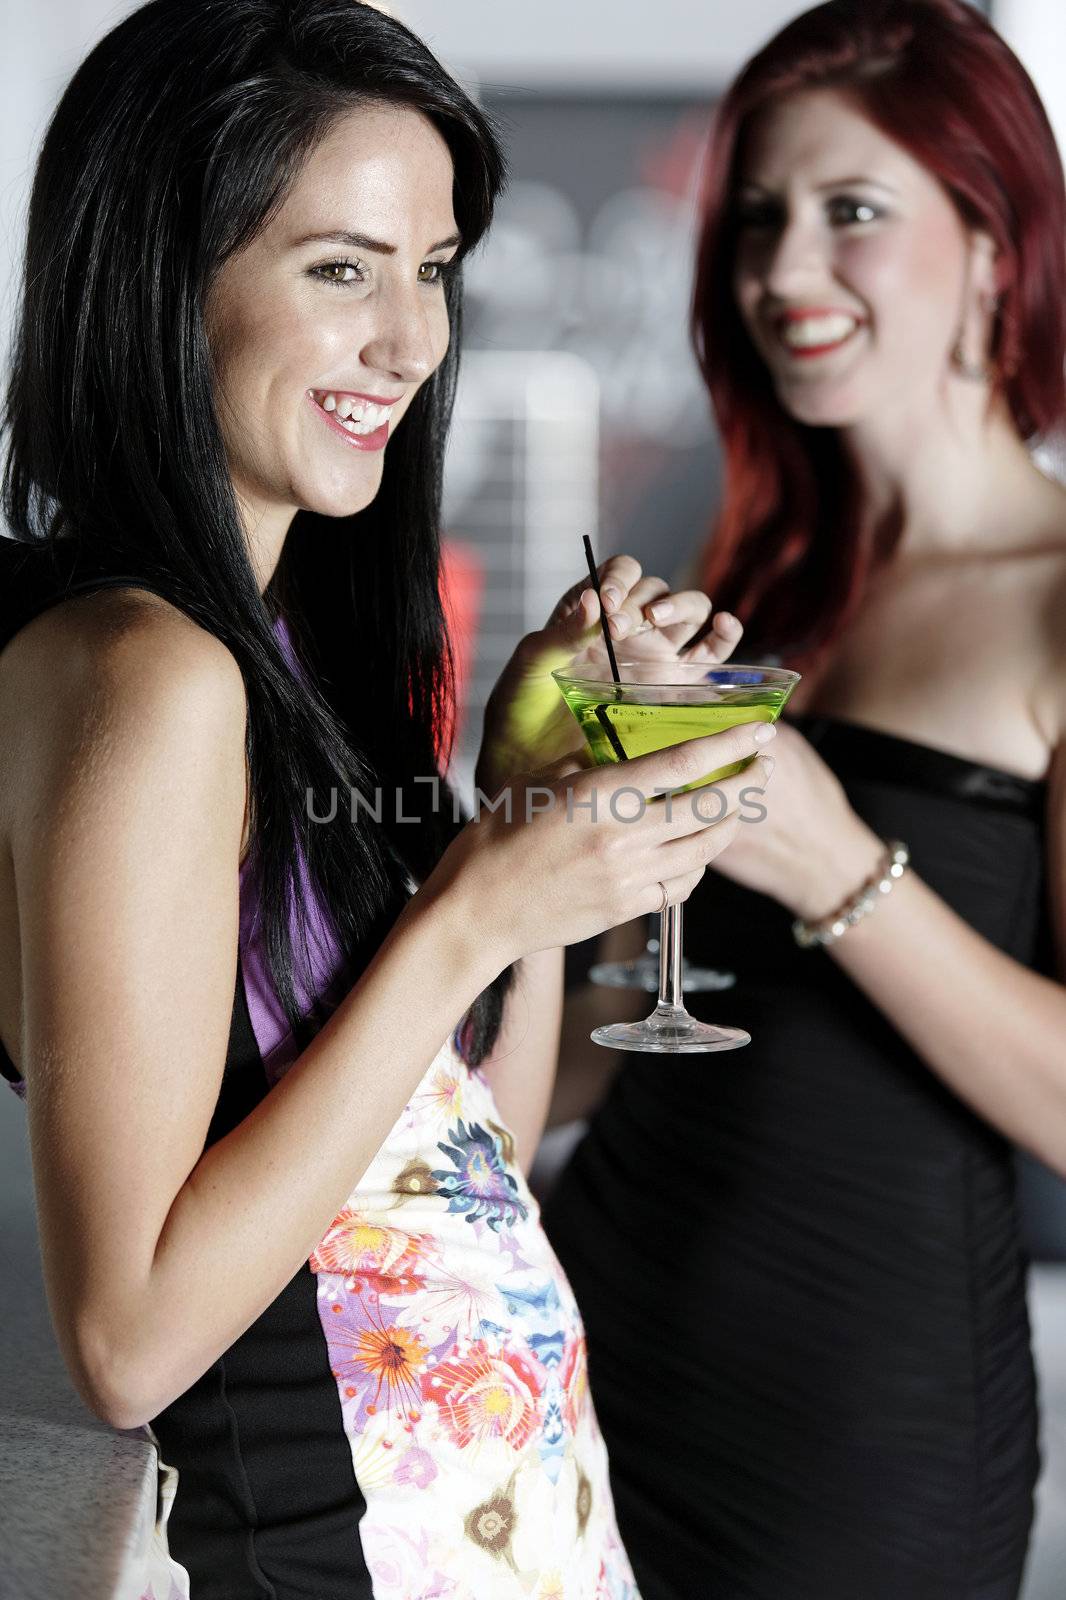 Two friends in a nightclub by studiofi